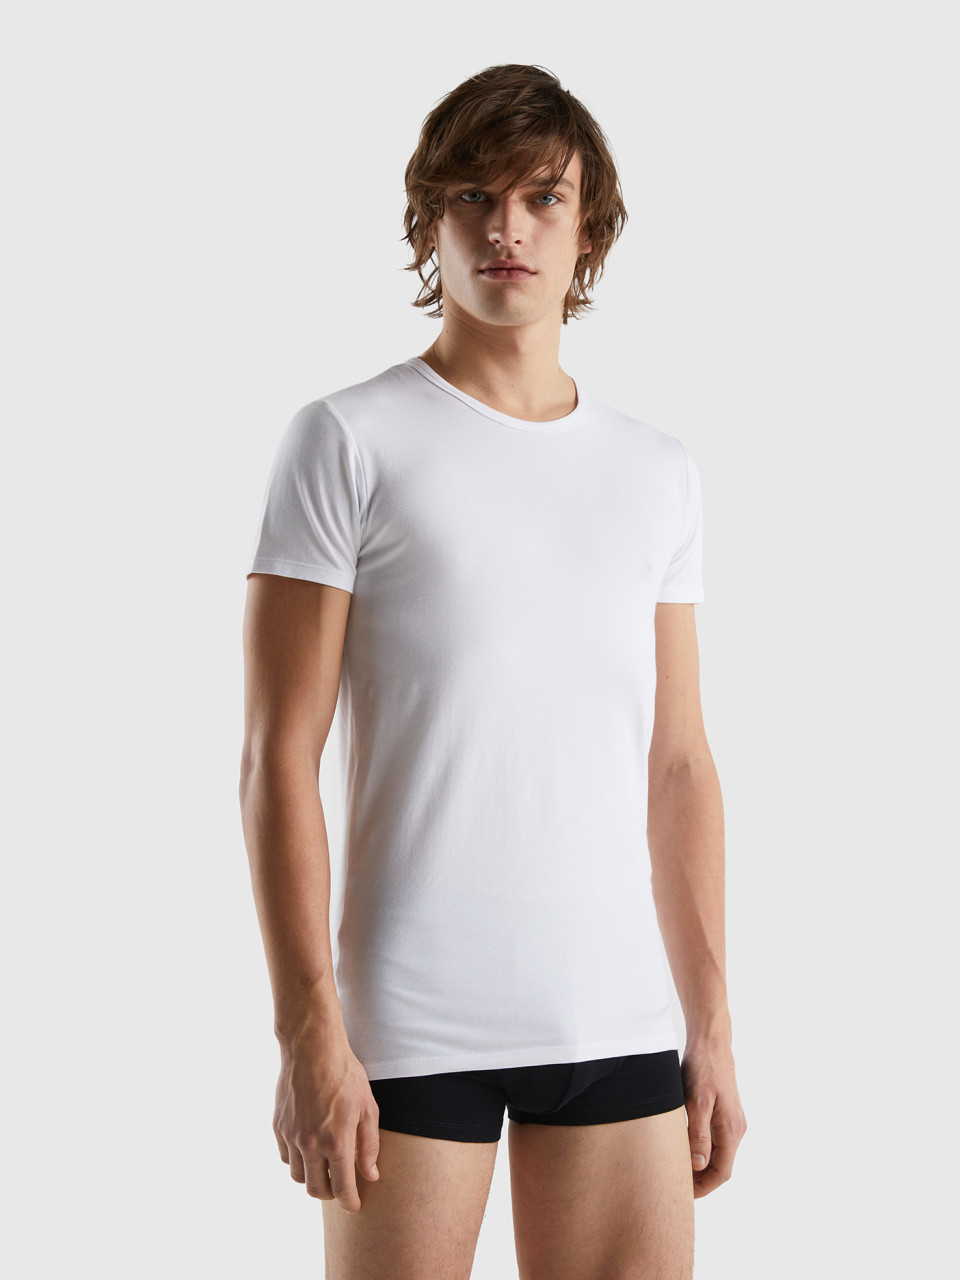 Benetton, Camiseta De Algodón Orgánico Elástico, Blanco, Hombre